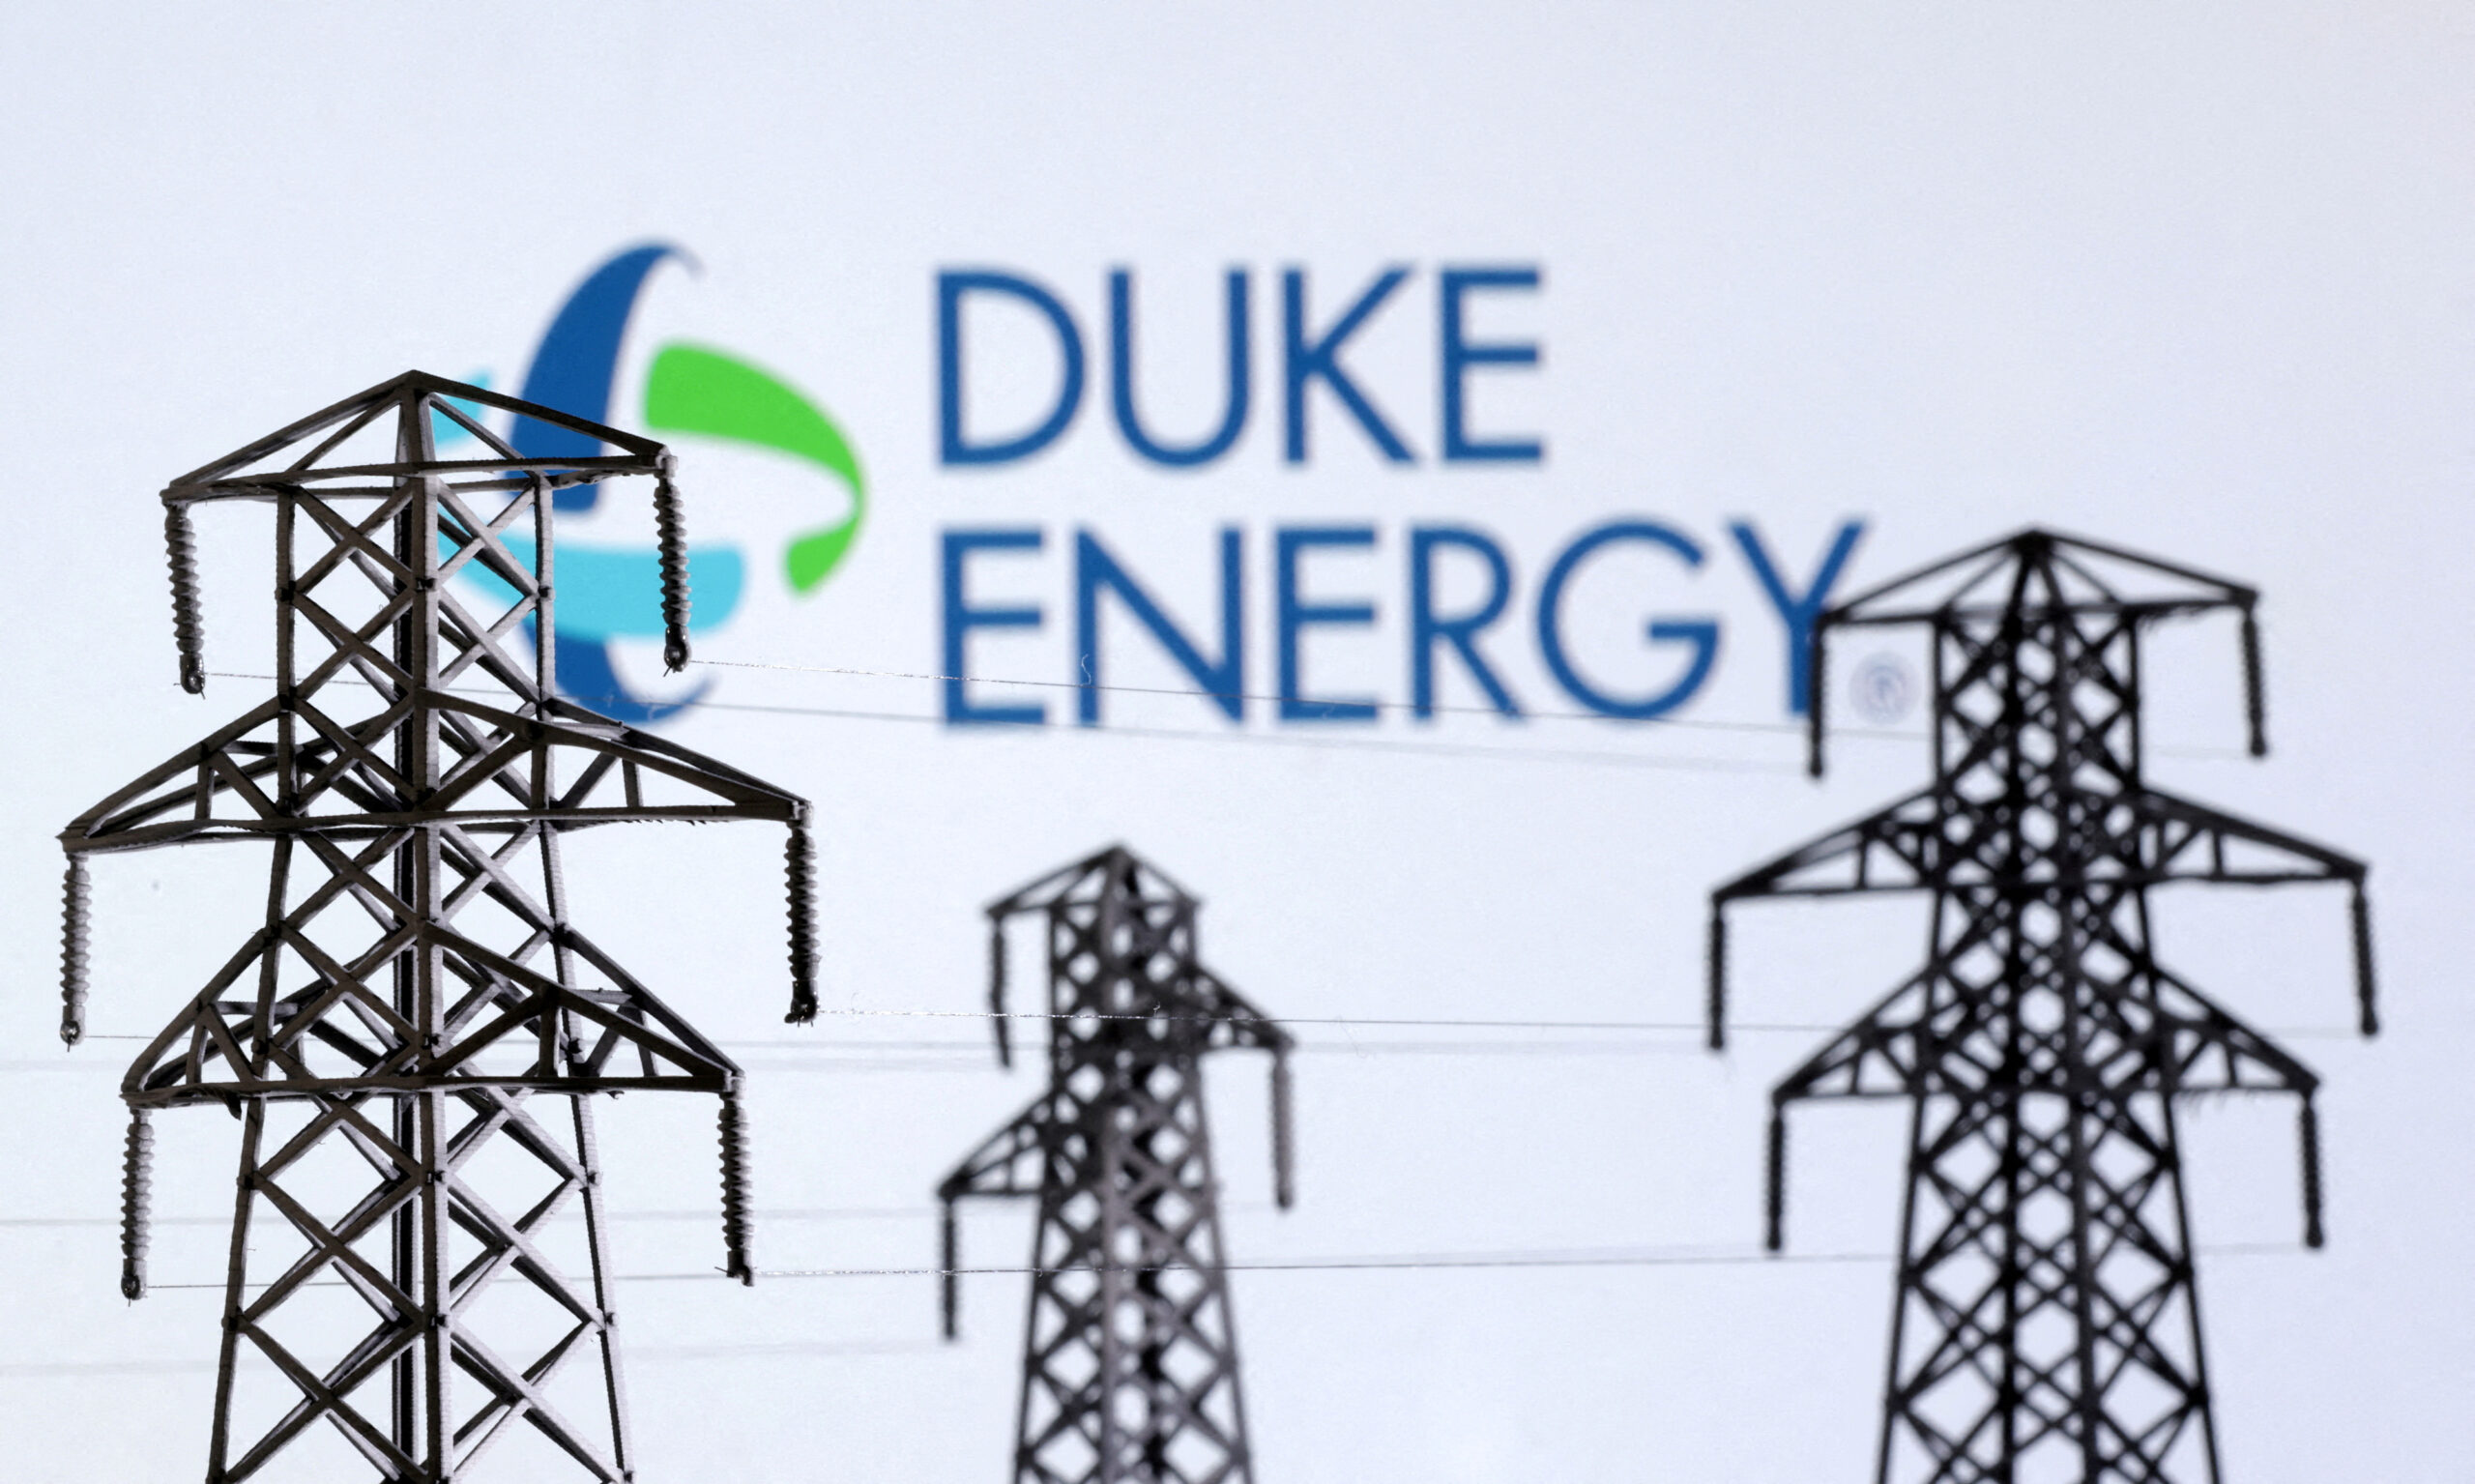 Duke Energy 